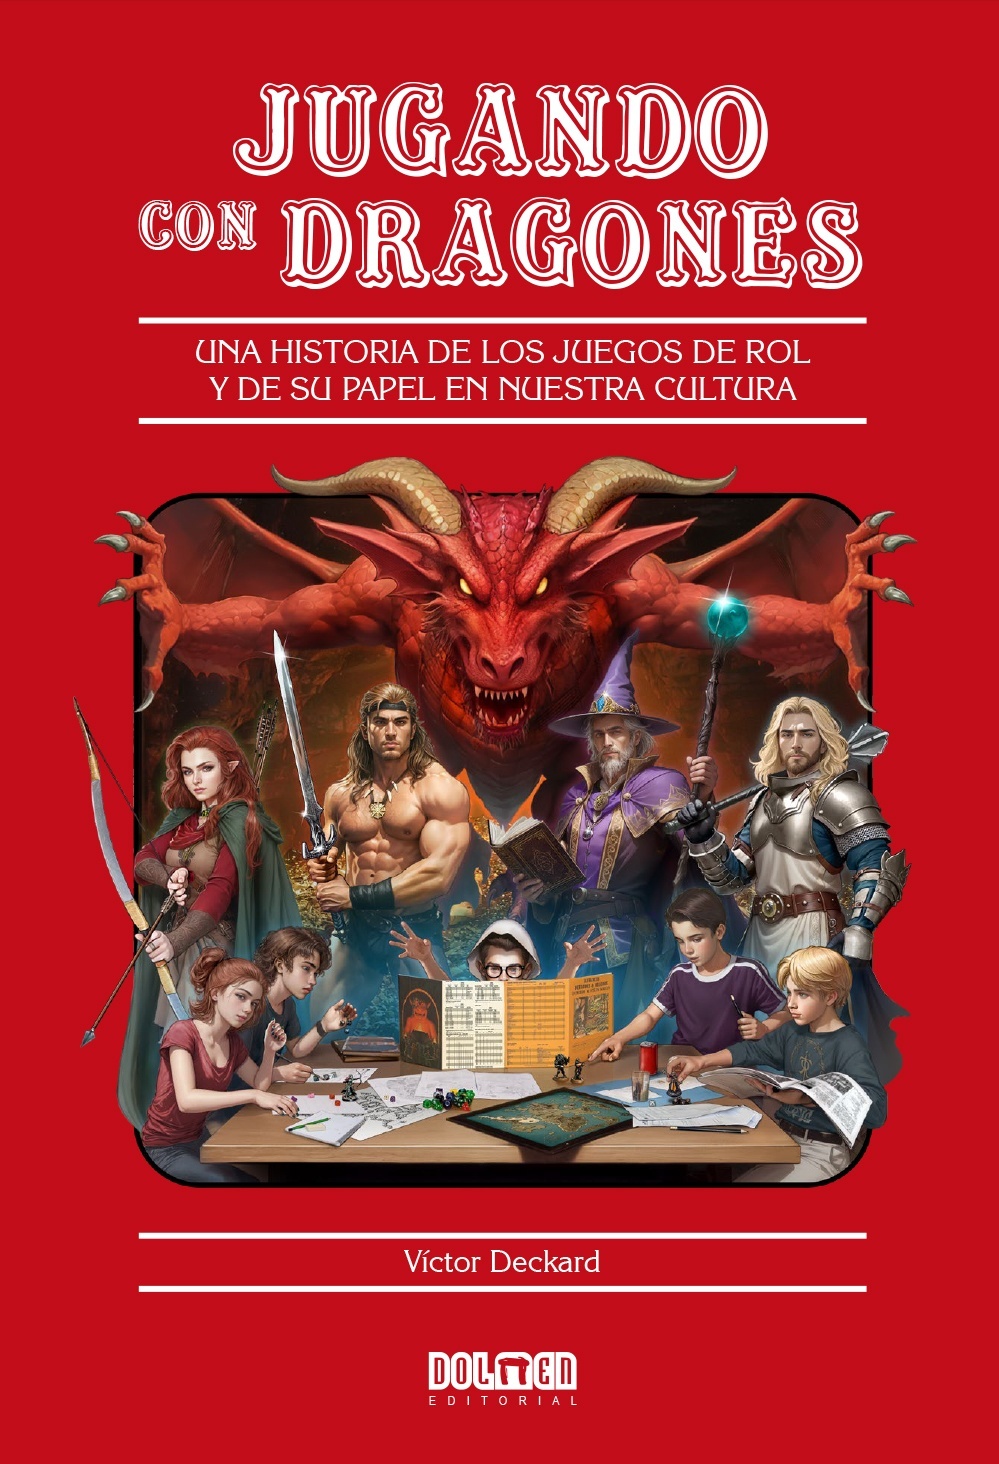 Jugando con dragones "Una historia de los juegos de rol y de su papel en nuestra cultura". 